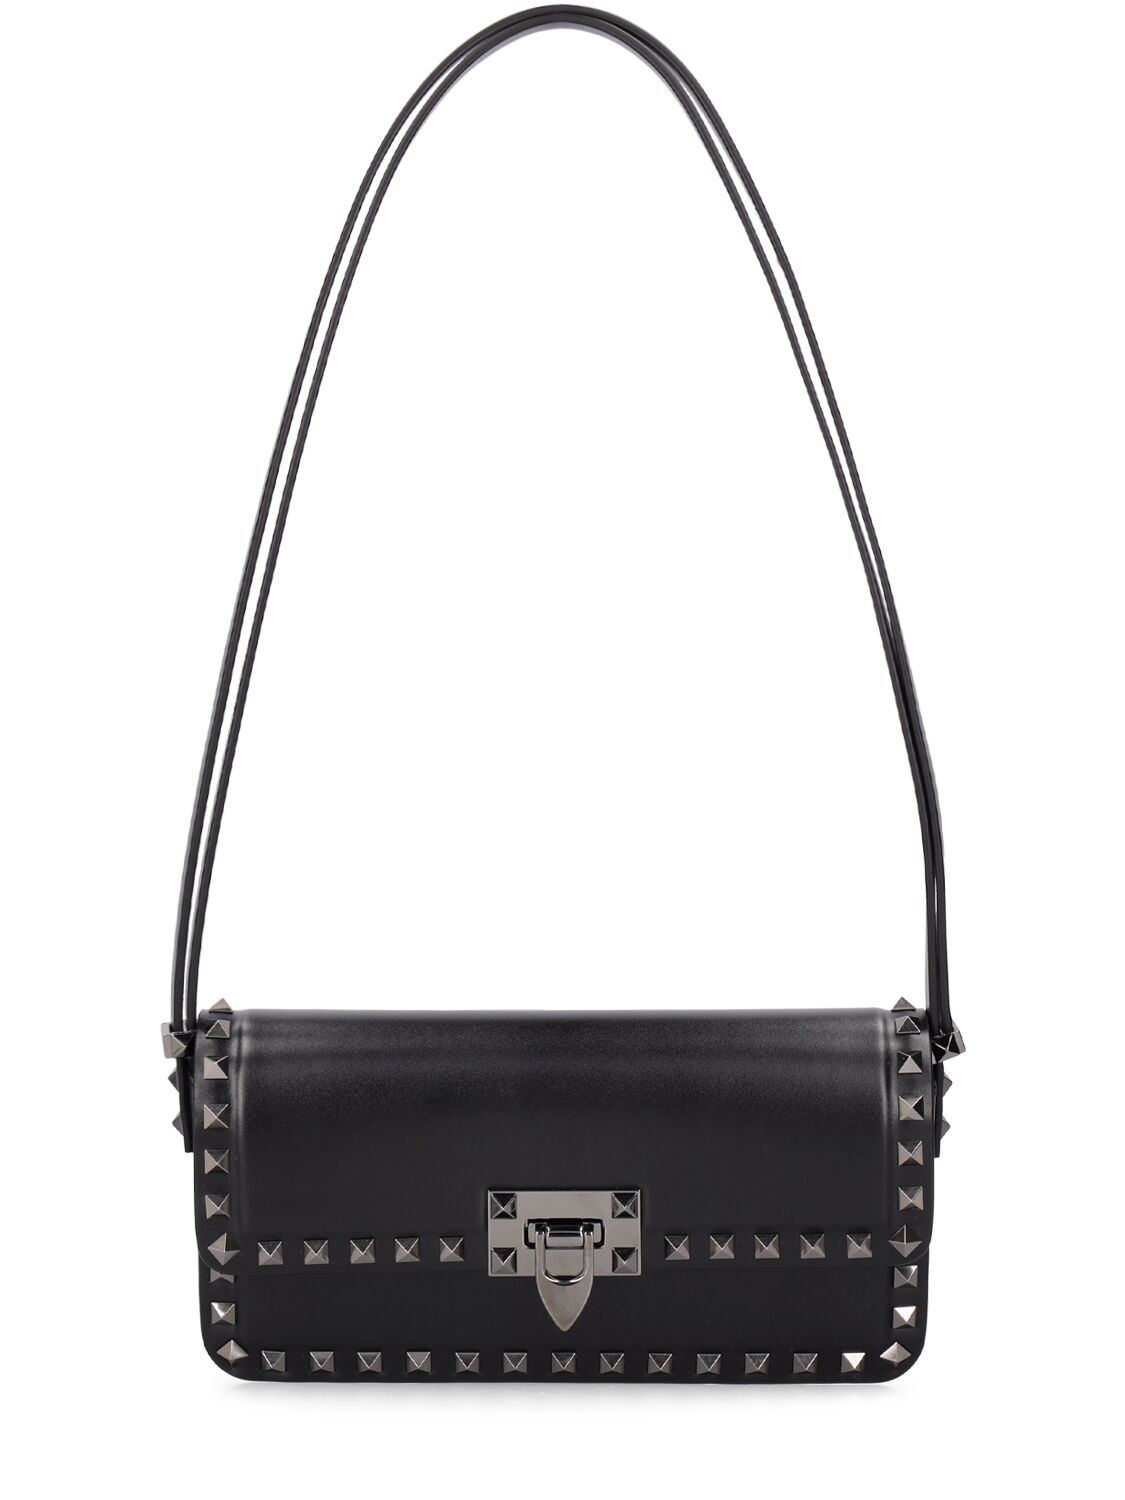 Valentino Garavani Rockstud Leather Shoulder Bag In Black